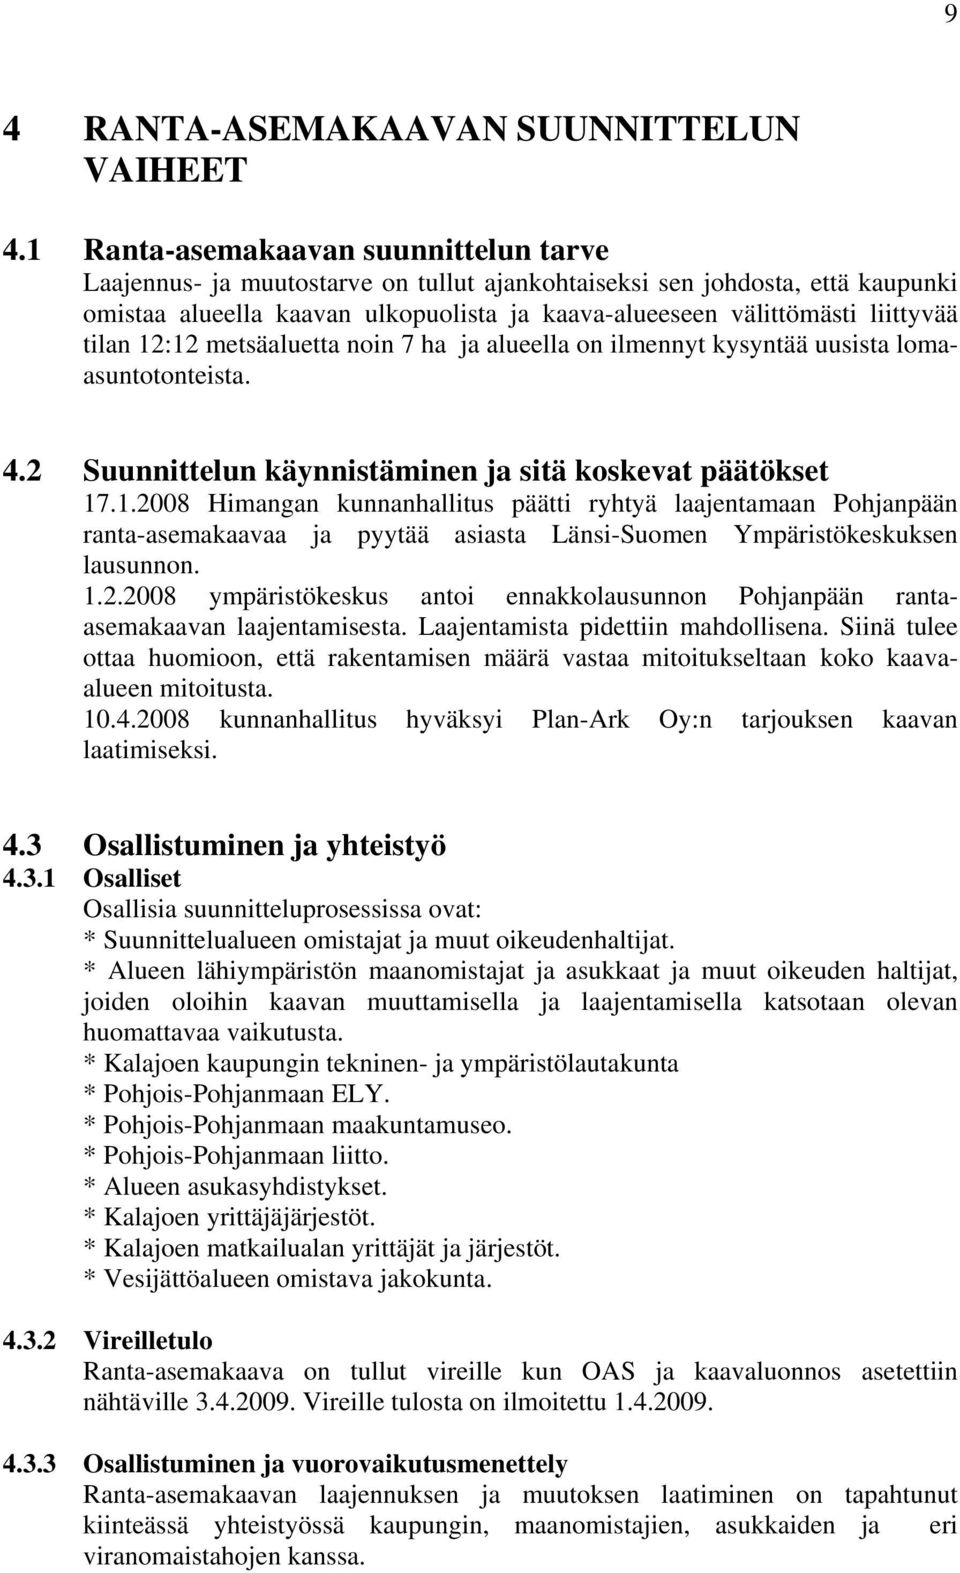 tilan 12:12 metsäaluetta noin 7 ha ja alueella on ilmennyt kysyntää uusista lomaasuntotonteista. 4.2 Suunnittelun käynnistäminen ja sitä koskevat päätökset 17.1.2008 Himangan kunnanhallitus päätti ryhtyä laajentamaan Pohjanpään ranta-asemakaavaa ja pyytää asiasta Länsi-Suomen Ympäristökeskuksen lausunnon.